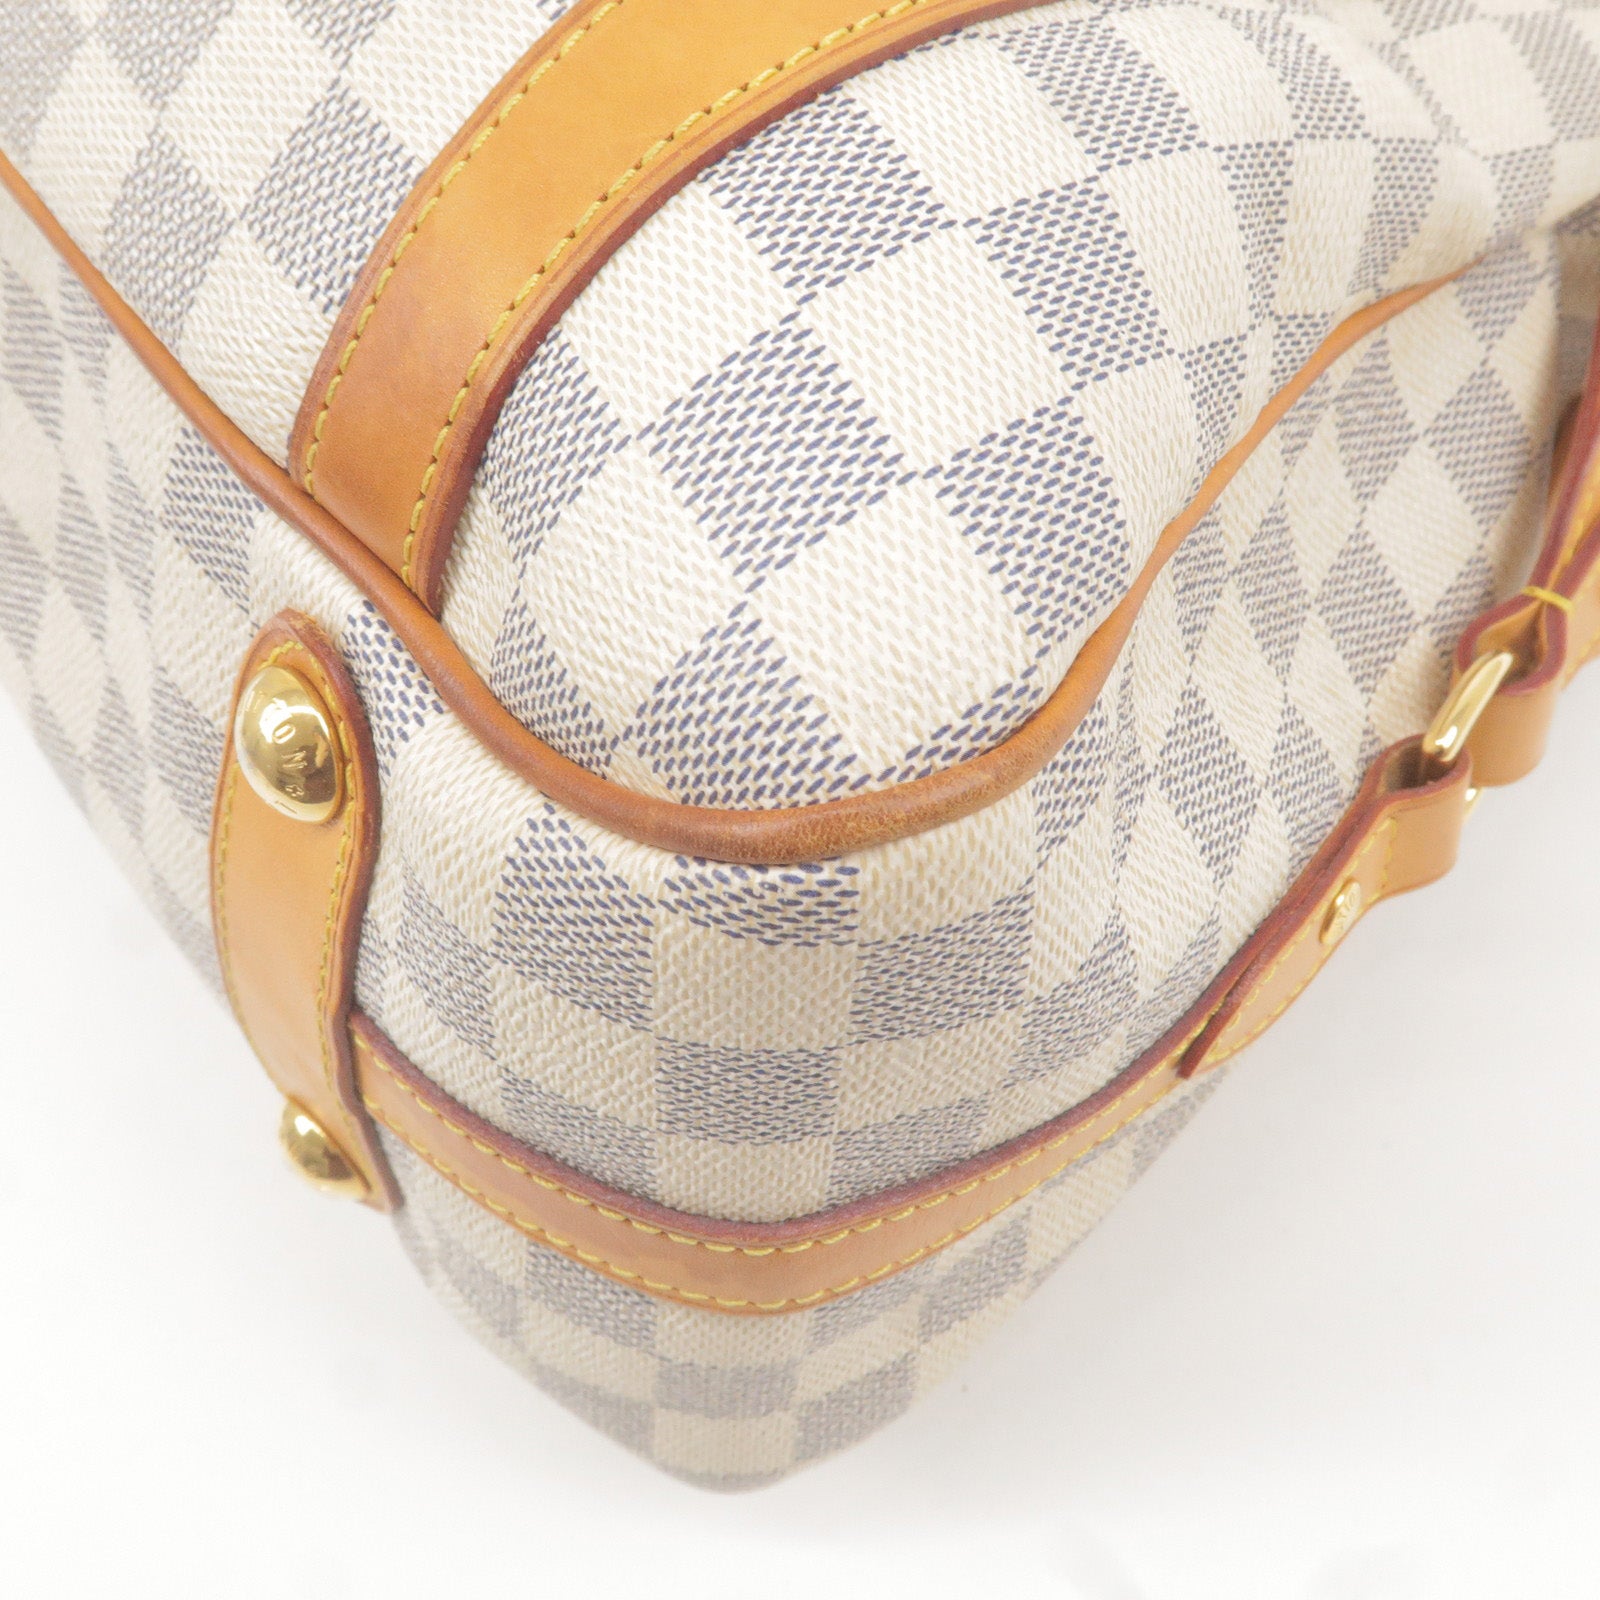 Louis Vuitton, Bags, Louis Vuitton Monogram Canvas Pallas Pm Shoulder Bag